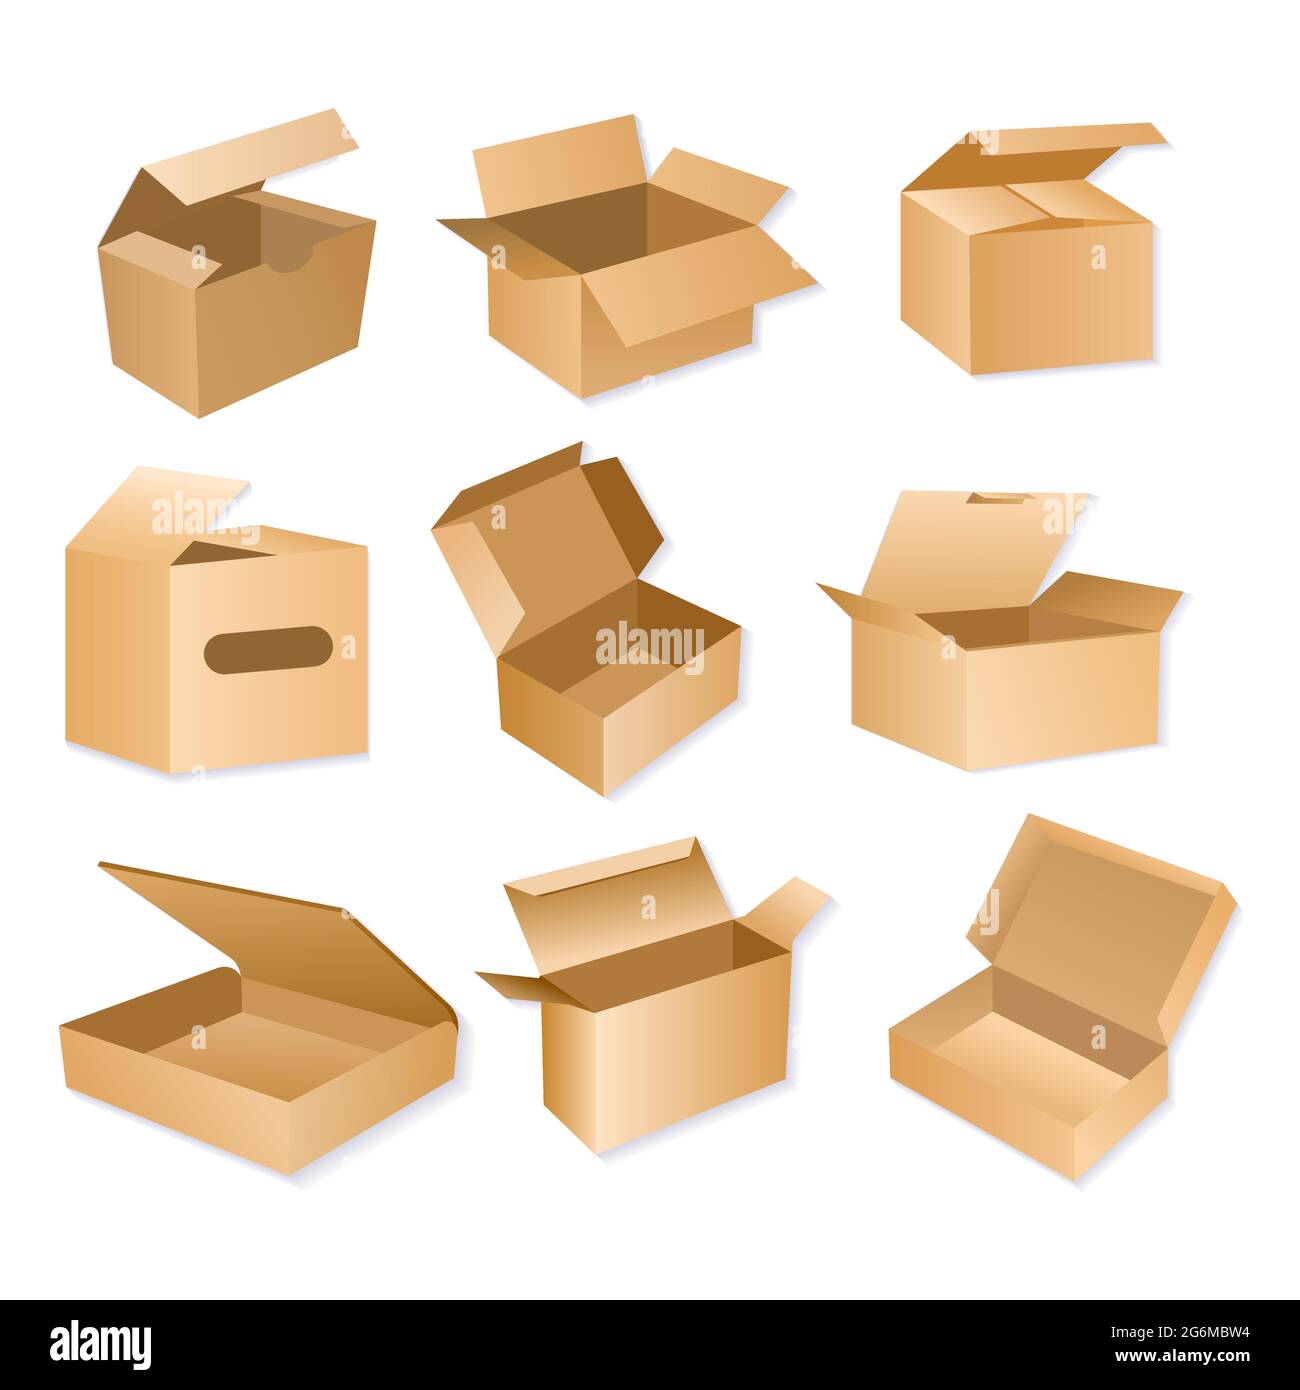 Illustration vectorielle de la boîte d'emballage en carton. Emballages de livraison en carton brun réalistes isolés sur fond blanc. Illustration de Vecteur